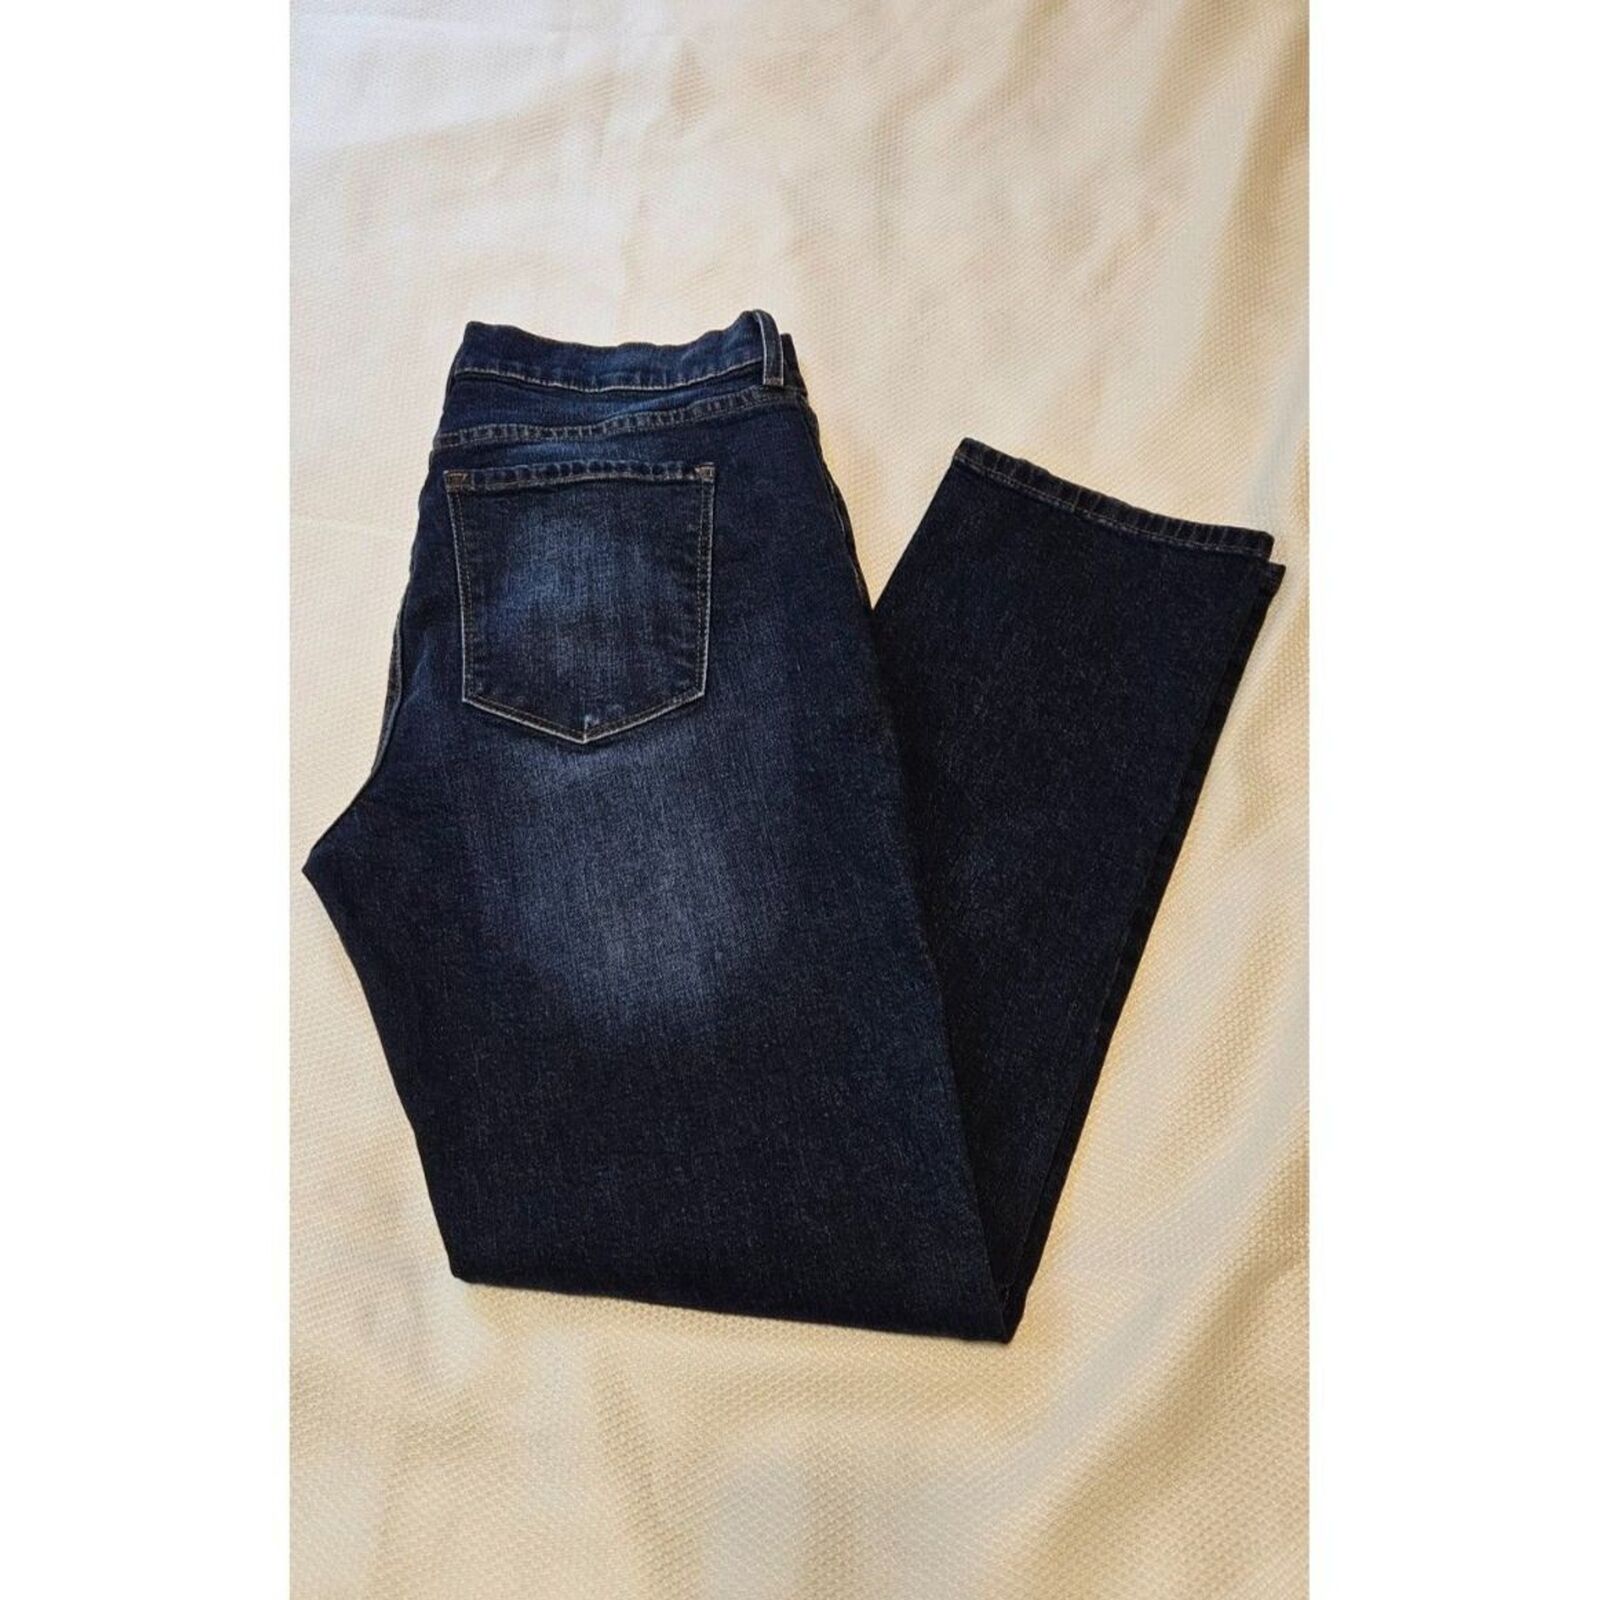 Mott & Bow Boyfriend Jeans 32 x 30 womens jeans - image 1